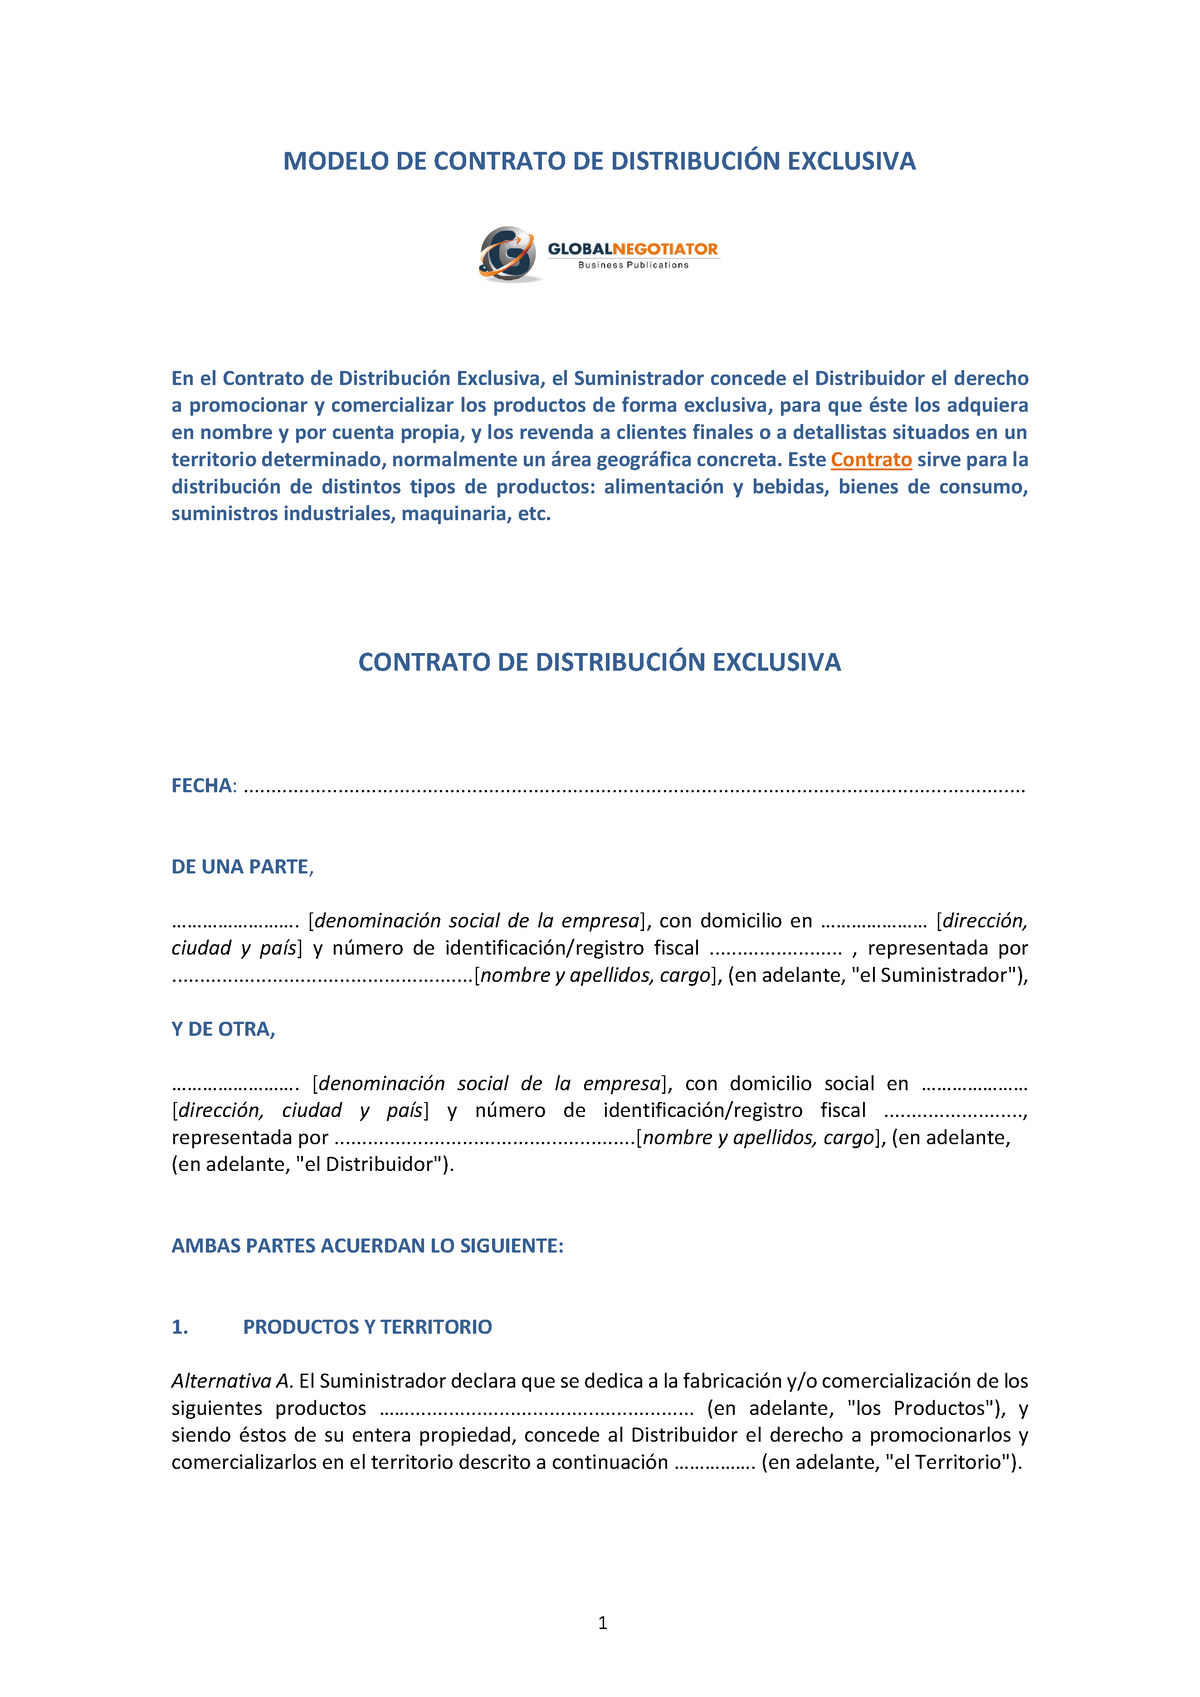 Contrato de distribucion exclusiva modelo ejemplo - MODELO DE CONTRATO DE  DISTRIBUCIÓN EXCLUSIVA En - Studocu